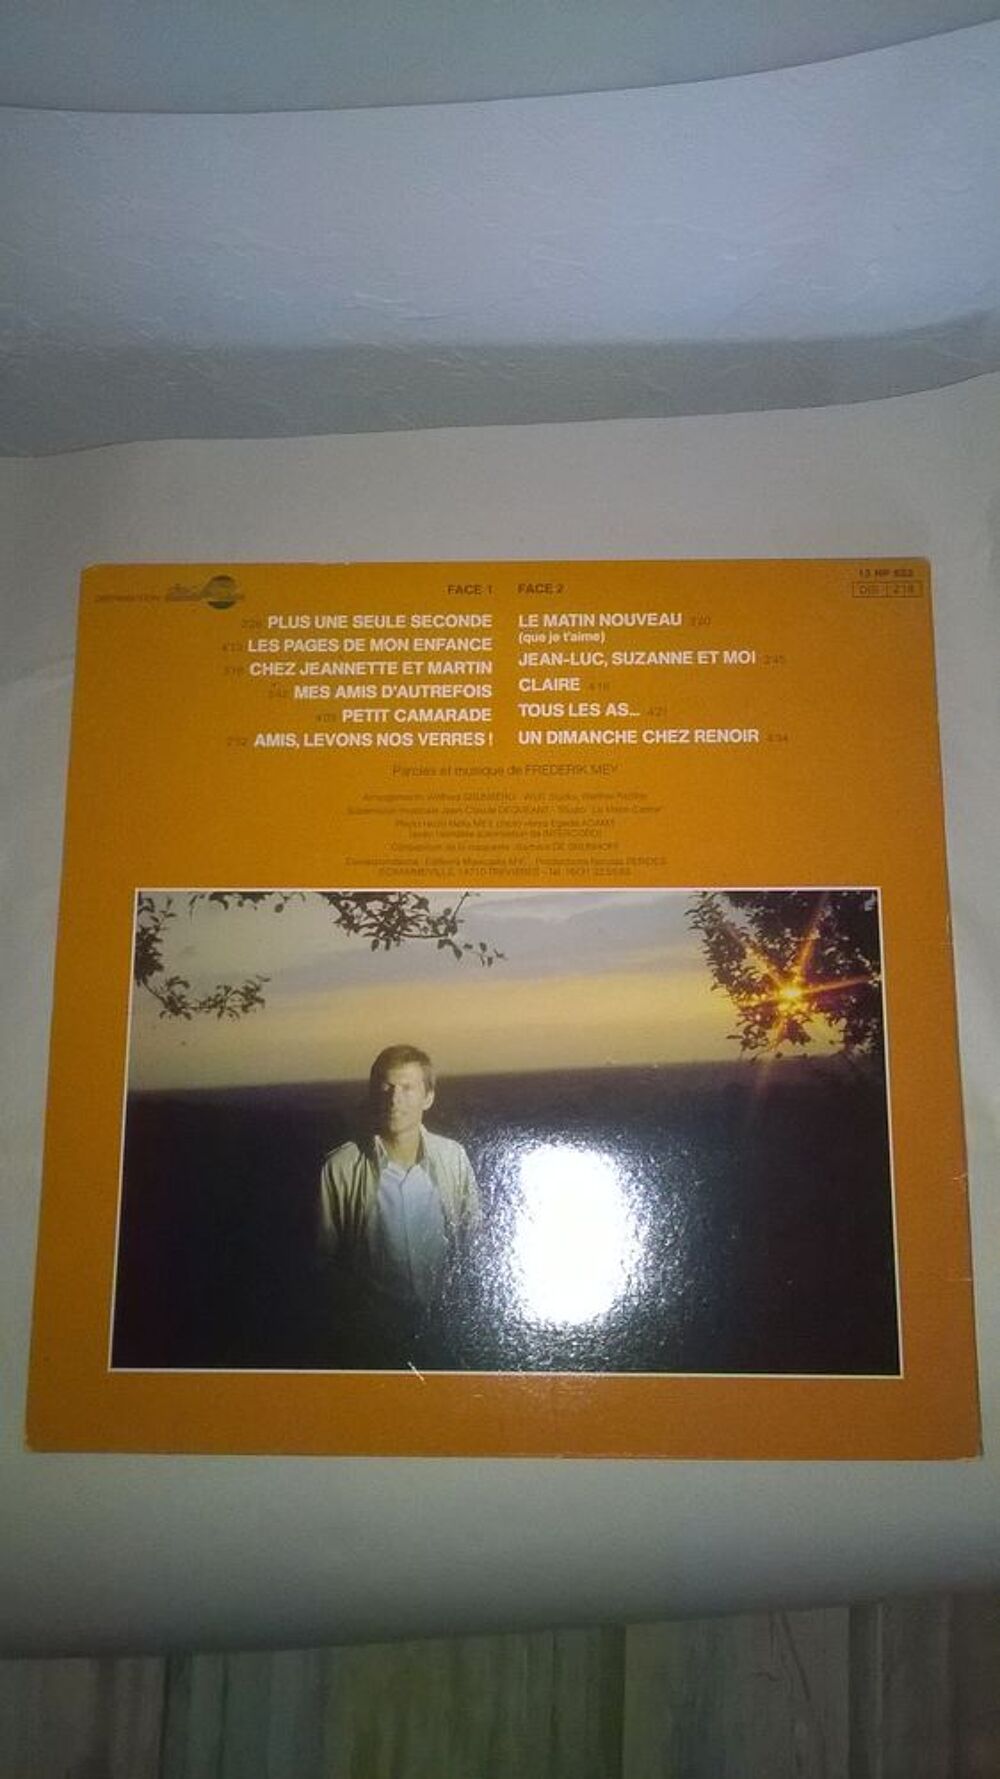 Vinyle Frederik Mey
Plus Une Seule Seconde
1982
Excellent CD et vinyles